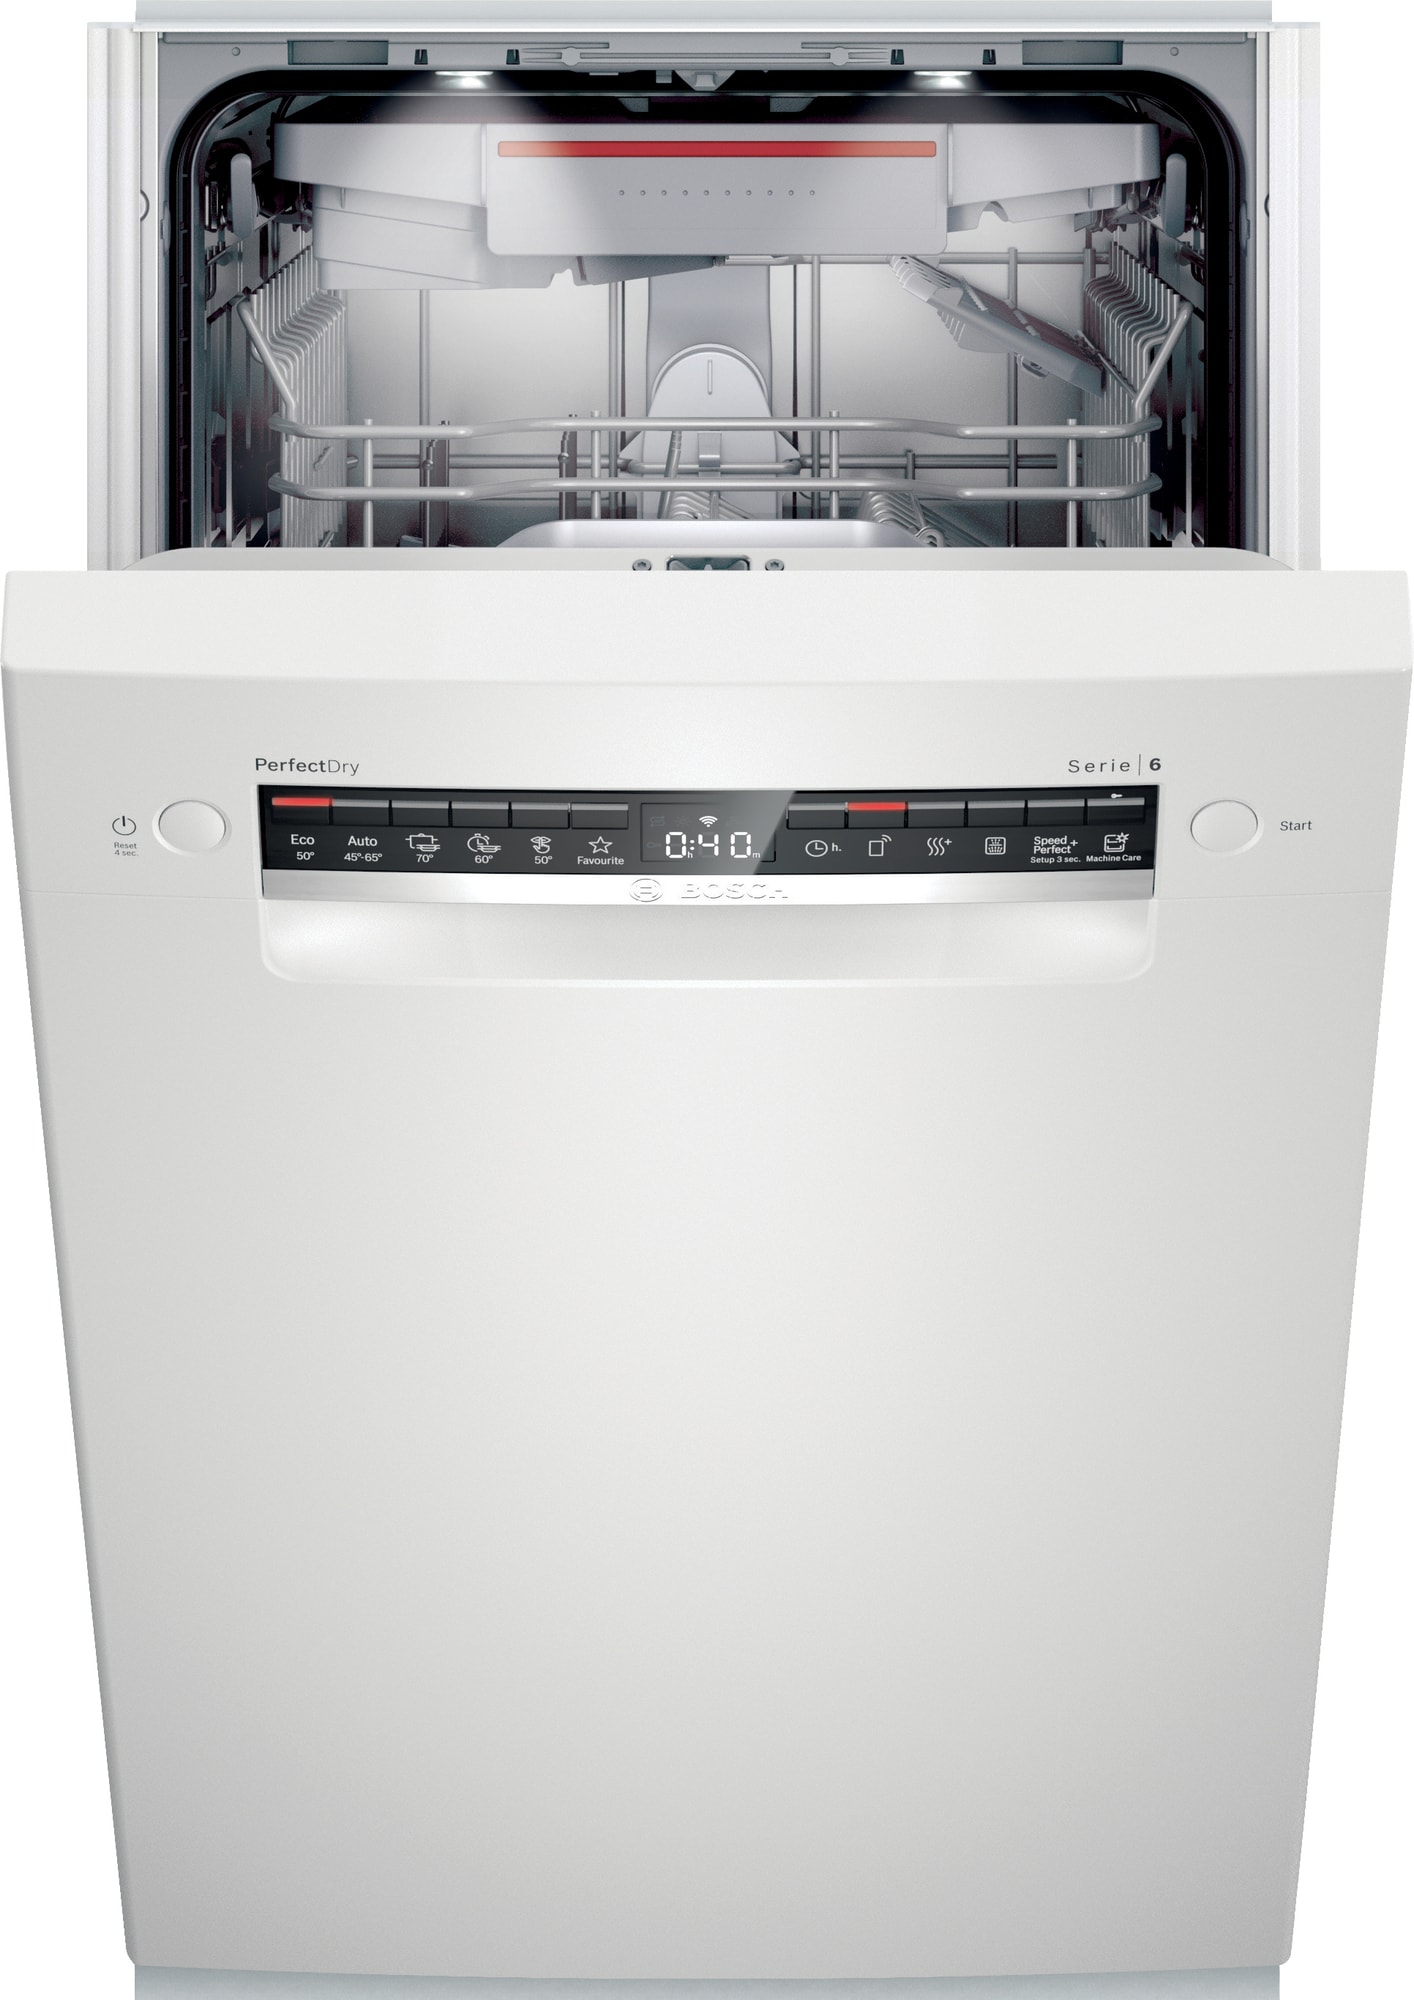 Bosch oppvaskmaskin SPU6ZMW10S (hvit) - Elkjøp